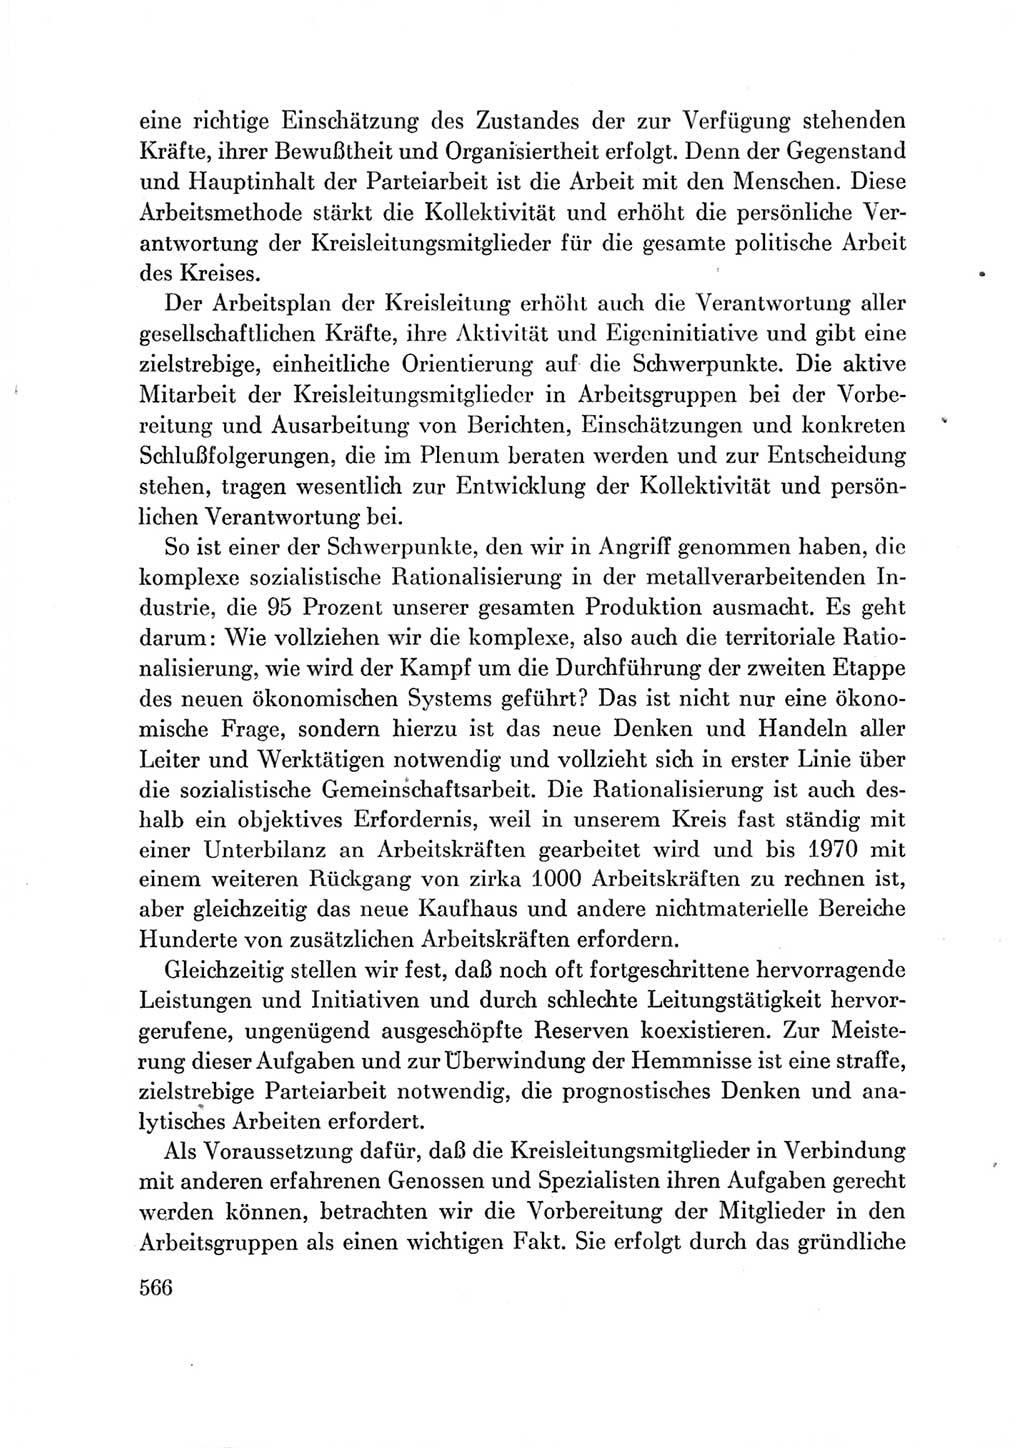 Protokoll der Verhandlungen des Ⅶ. Parteitages der Sozialistischen Einheitspartei Deutschlands (SED) [Deutsche Demokratische Republik (DDR)] 1967, Band Ⅲ, Seite 566 (Prot. Verh. Ⅶ. PT SED DDR 1967, Bd. Ⅲ, S. 566)